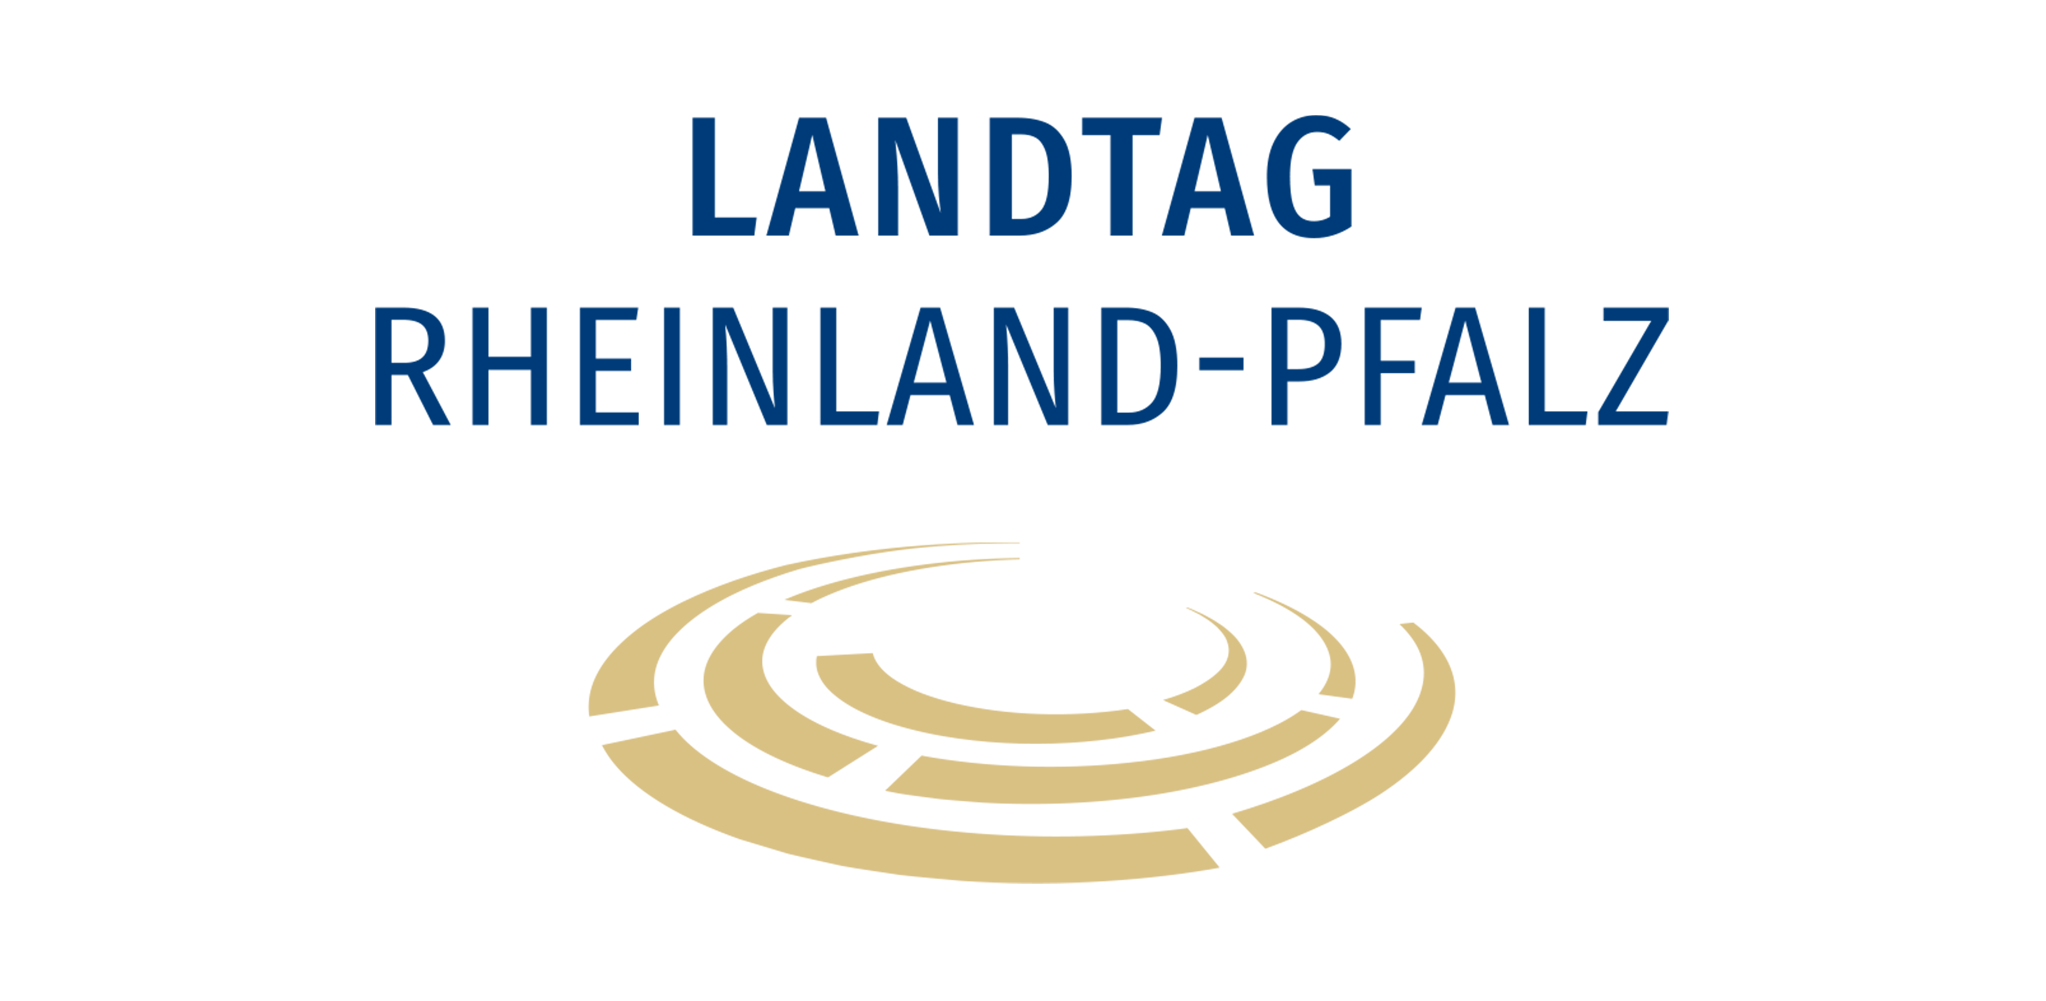 Landtag RLP